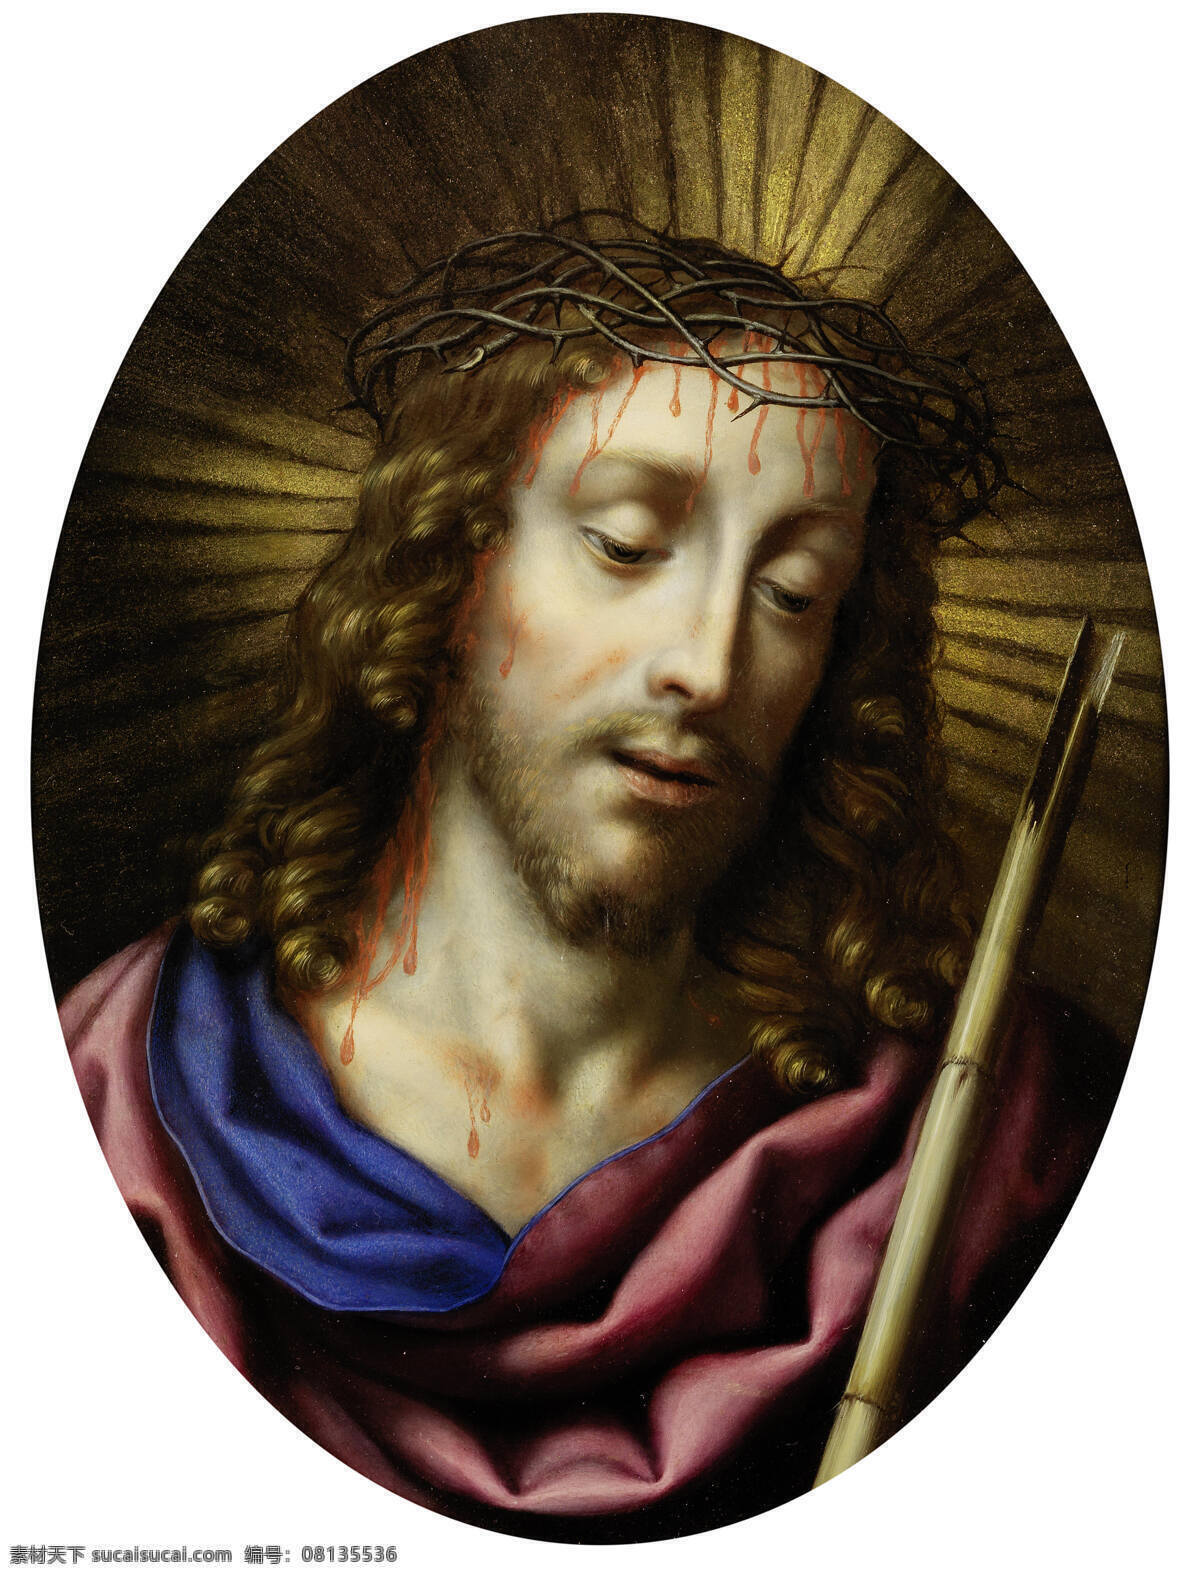 耶稣 圣经故事 上帝之子 基督教 荆棘加冕 宗教油画 古典油画 油画 文化艺术 绘画书法